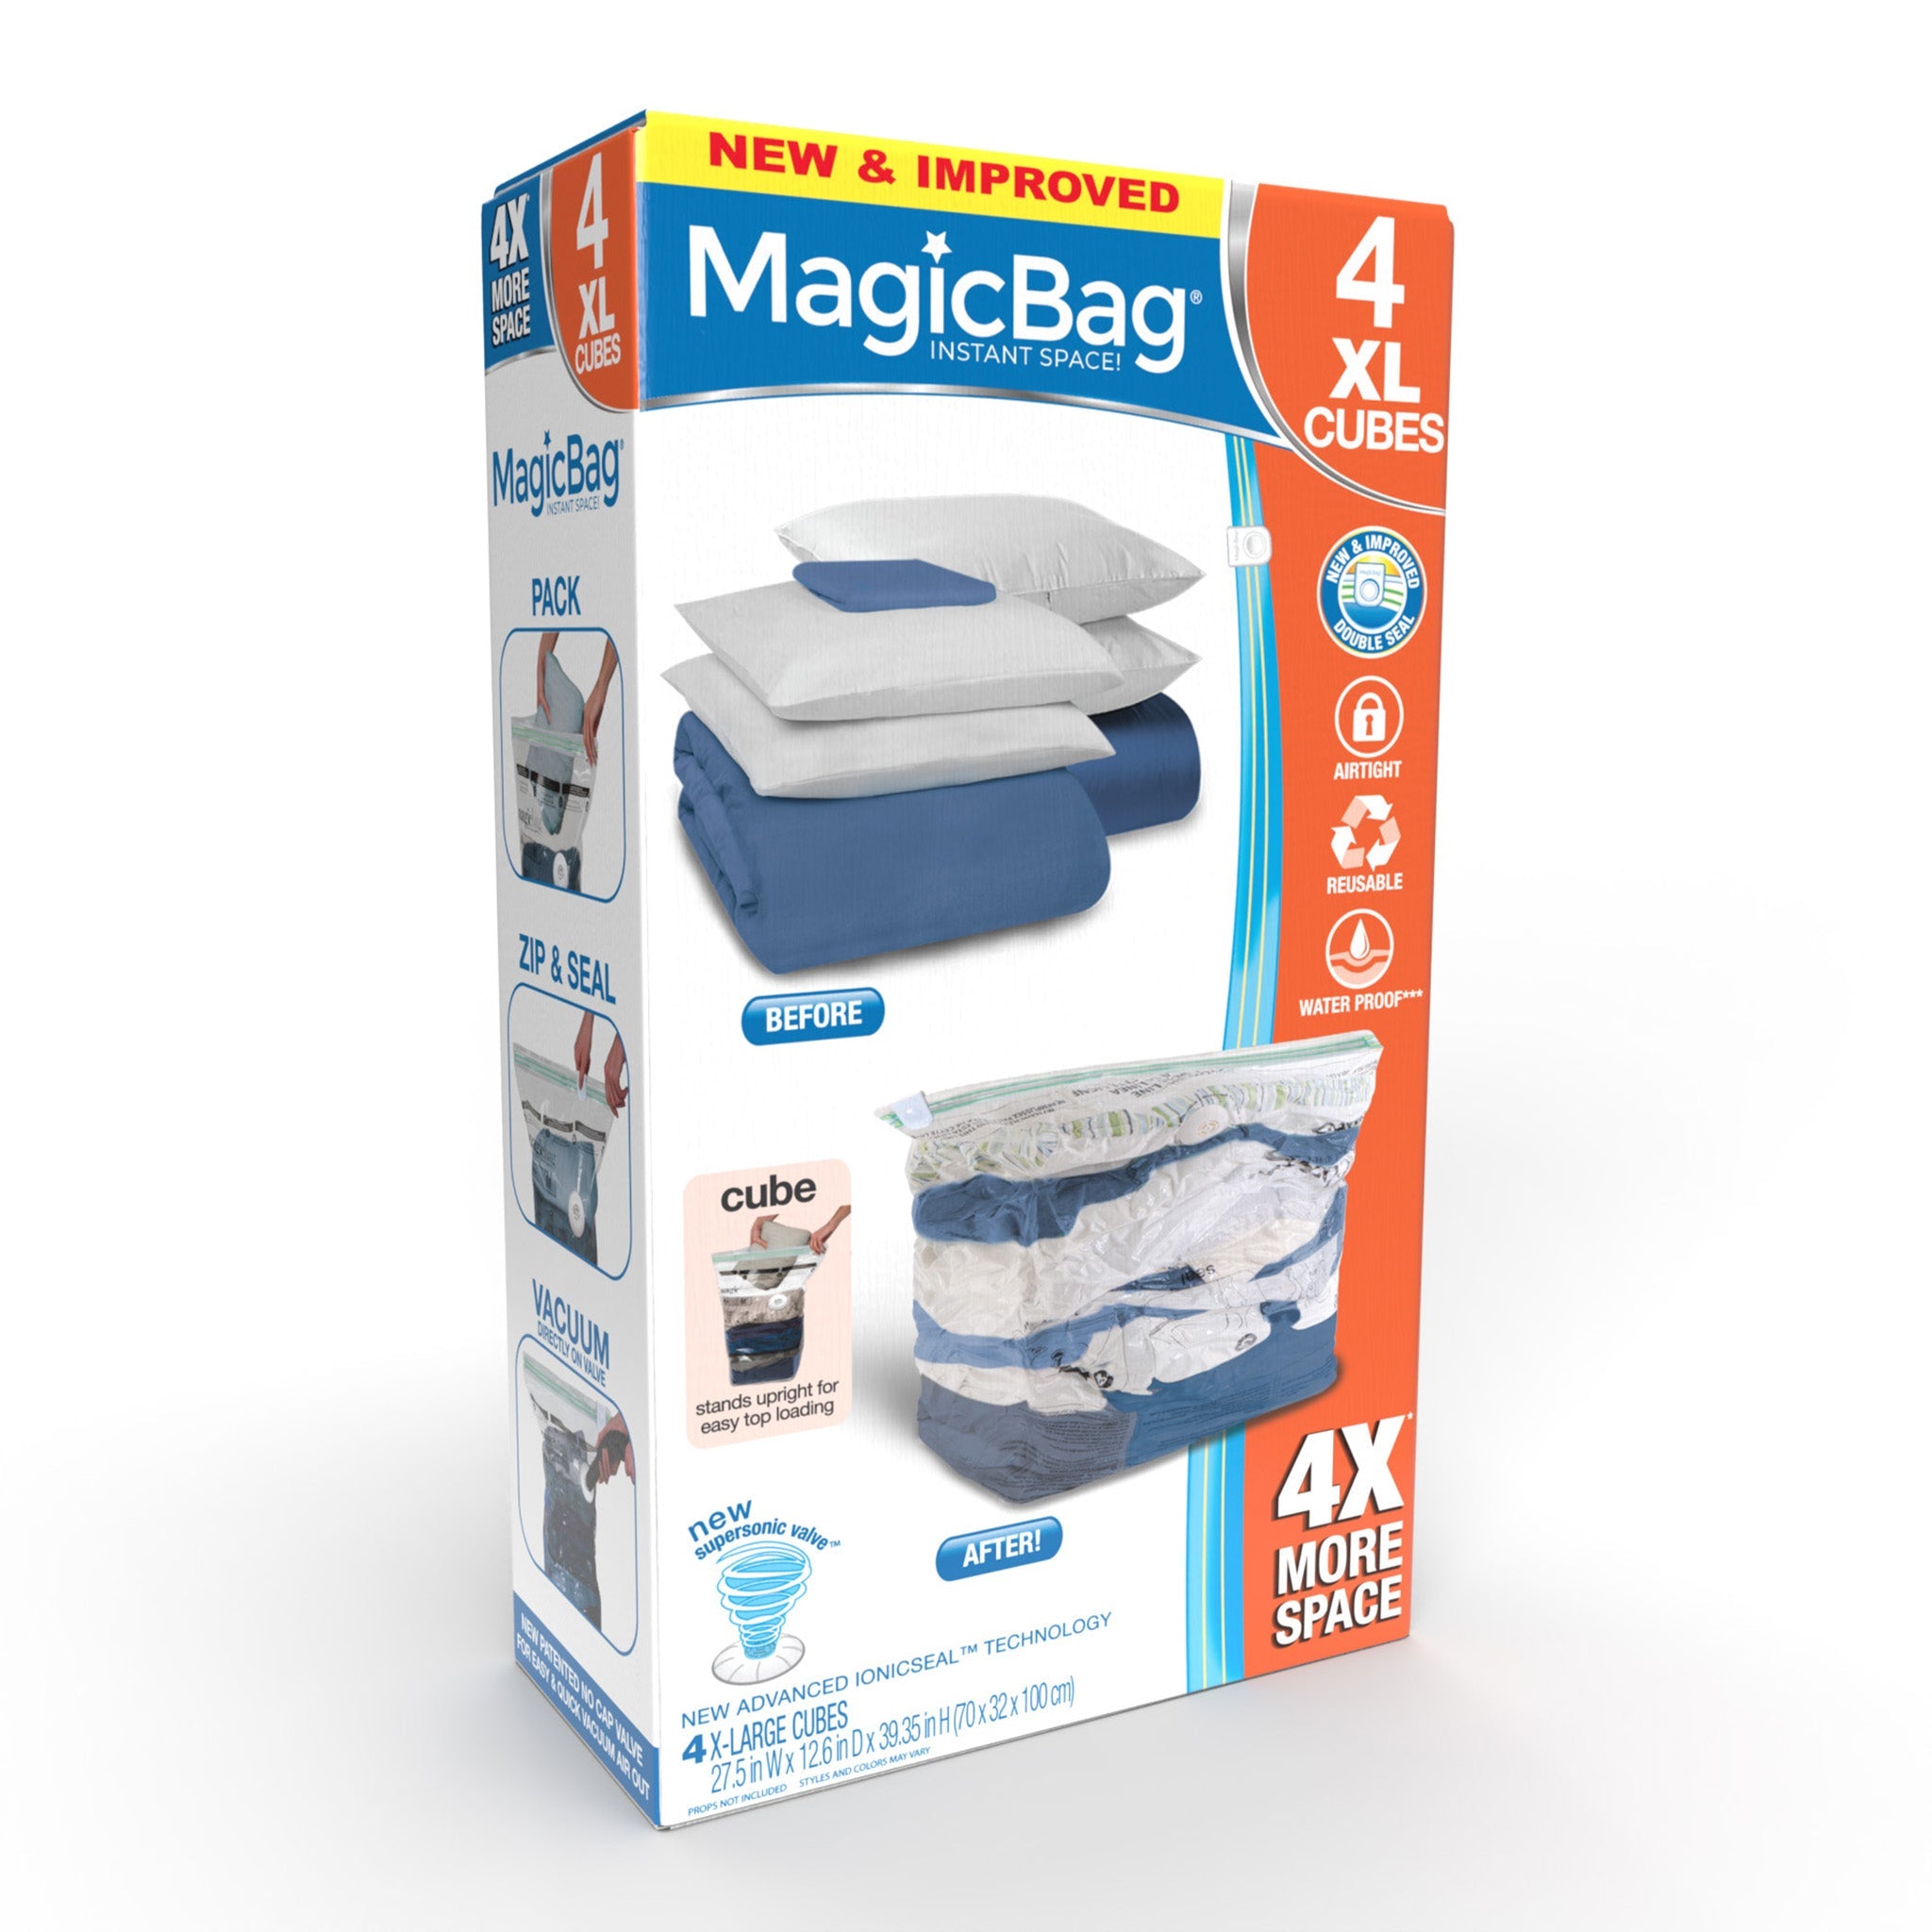 Jumbo Double Cube Design Plastic Vacuum Storage Bag Vacuum Seal